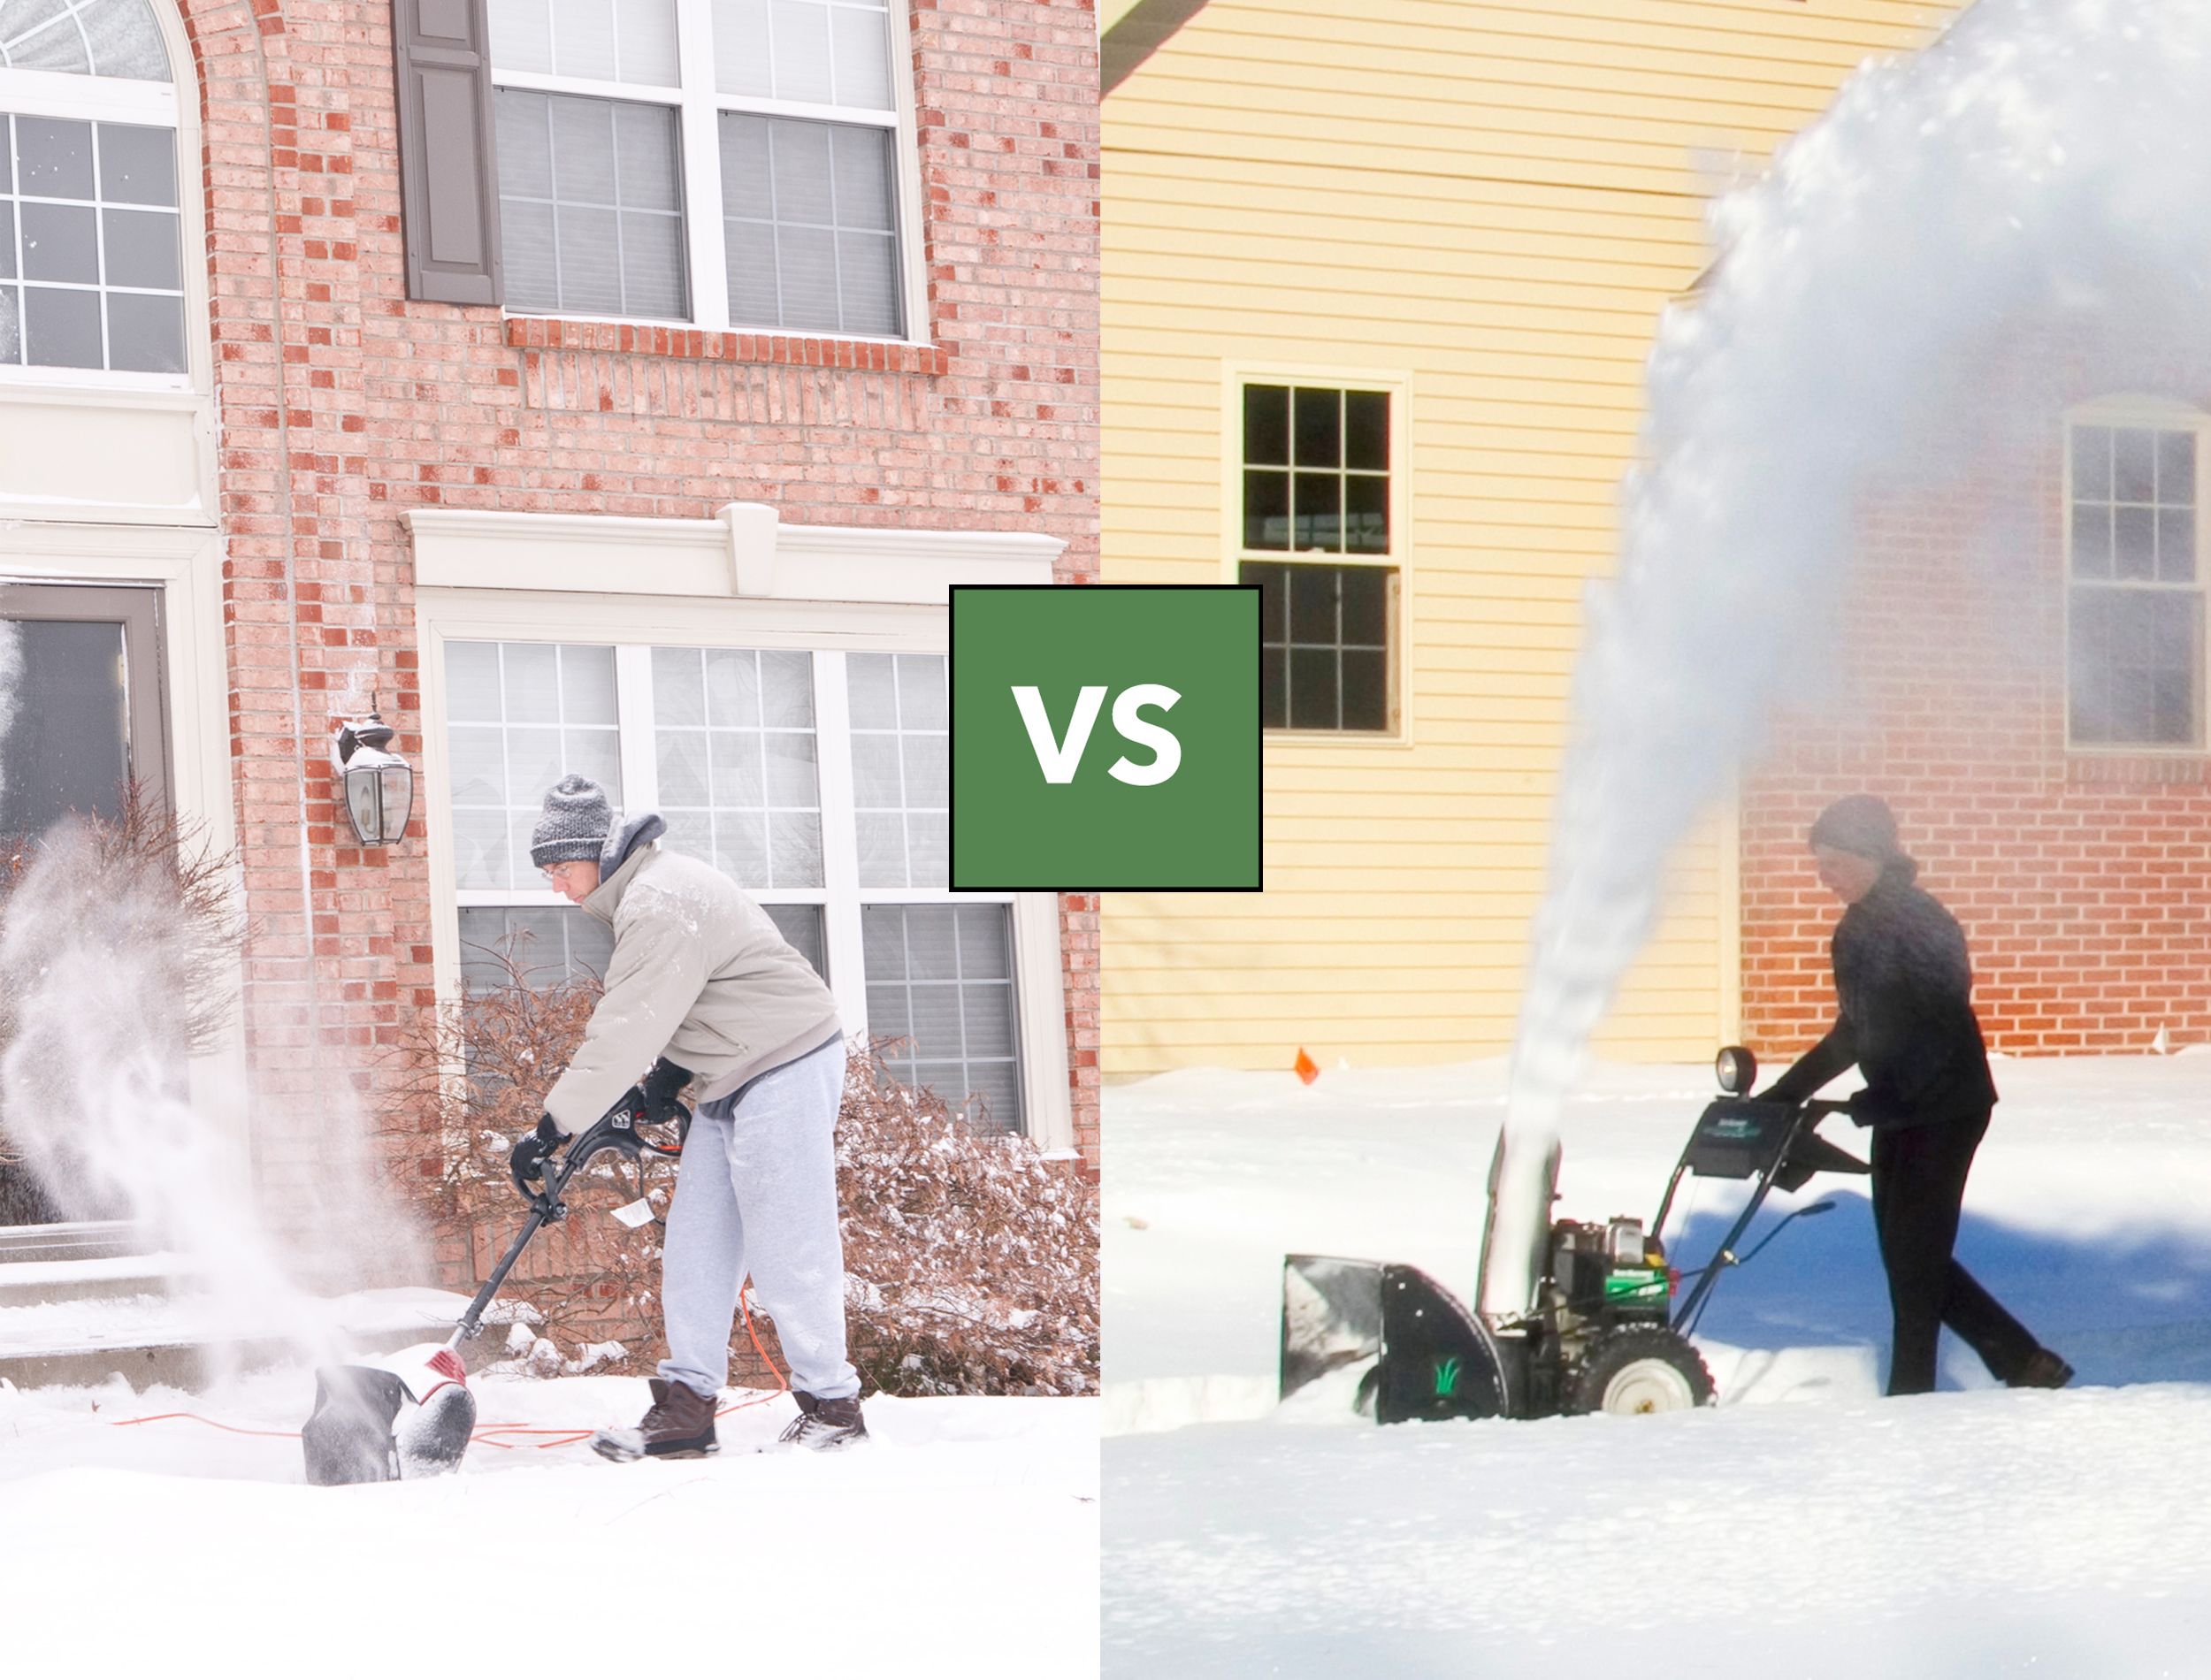 electric snow shovel VS snowblower